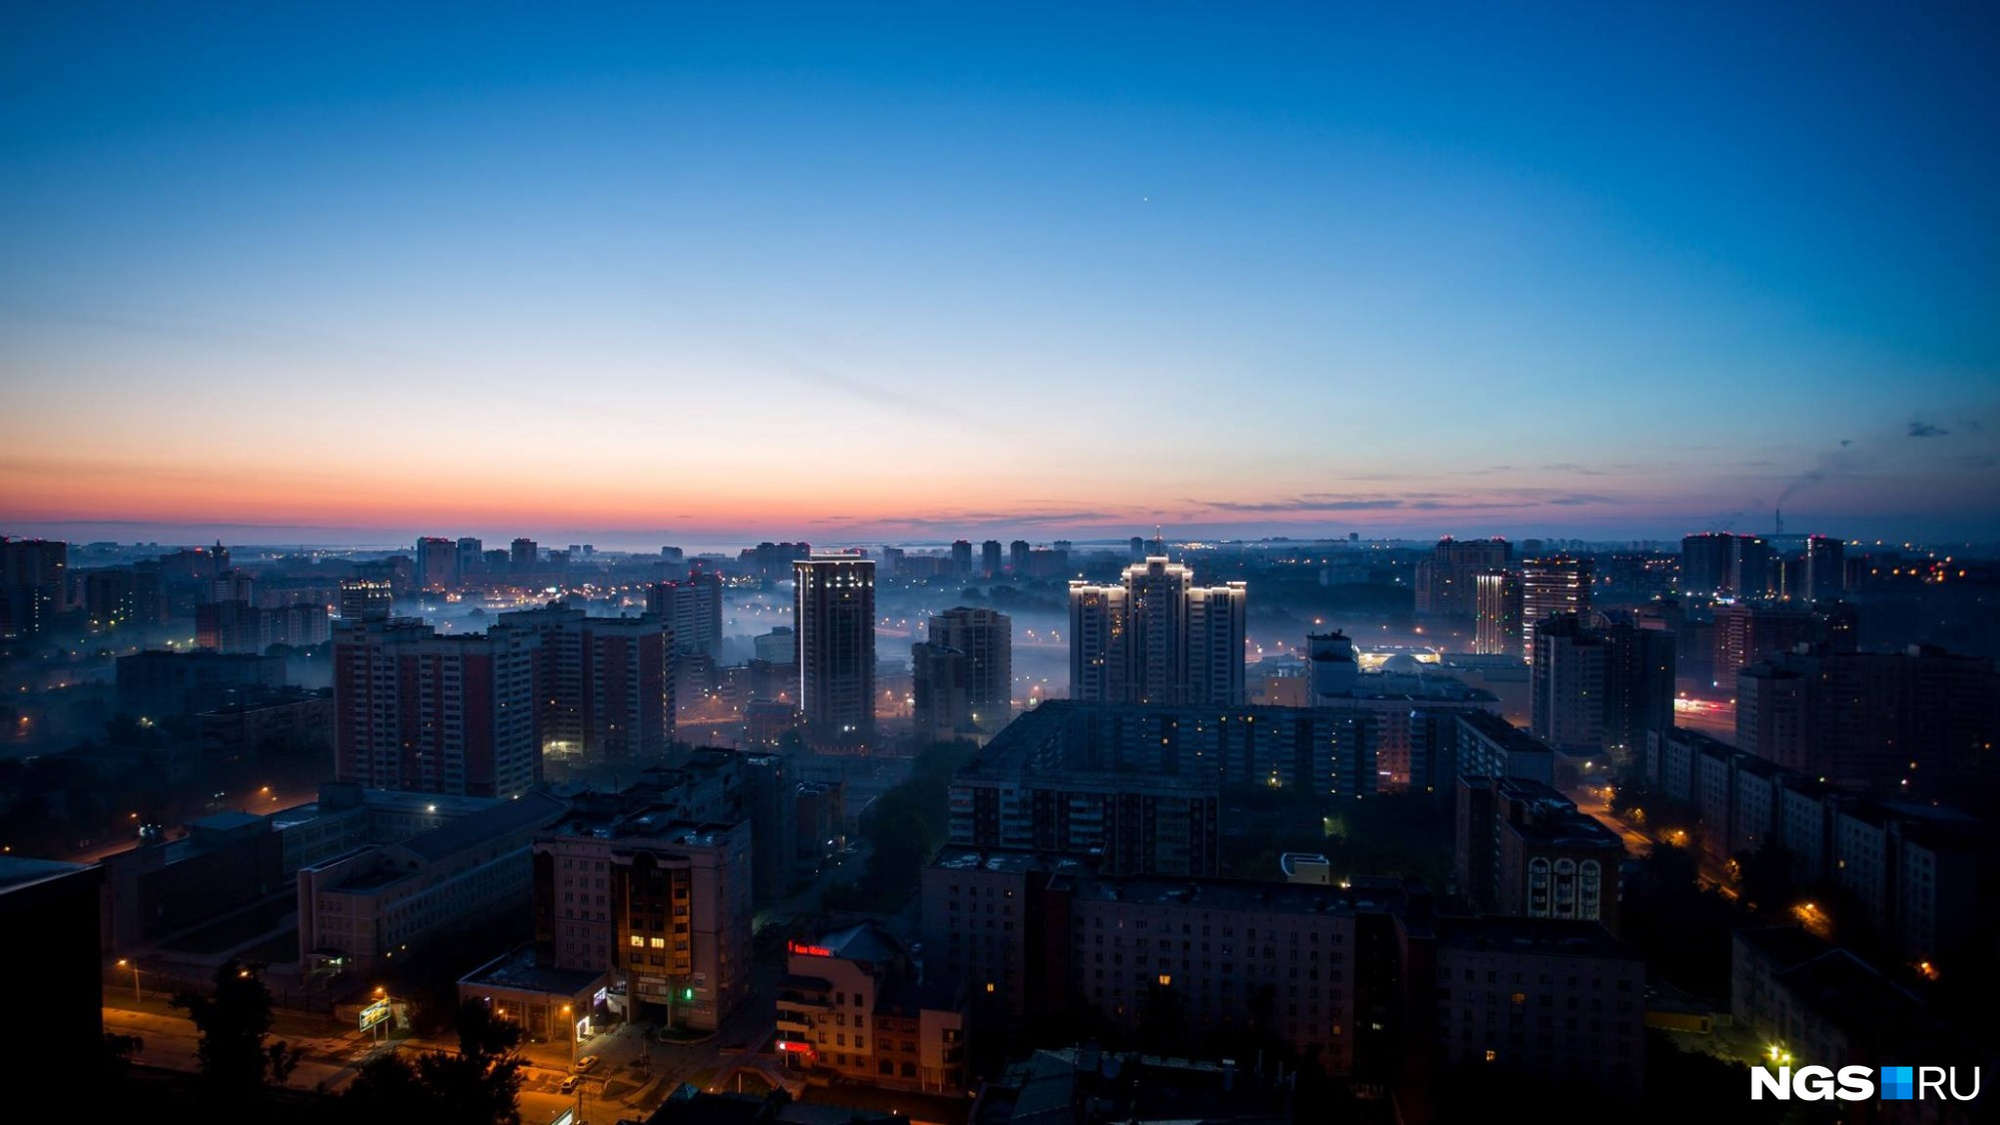 Красивый рассвет над Новосибирском и ещё 13 городами России можно увидеть в таймлапсе по <a href="https://ngs.ru/text/gorod/2017/08/16/50896691/" target="_blank" class="_">ссылке</a>. Фото Александра Ощепкова